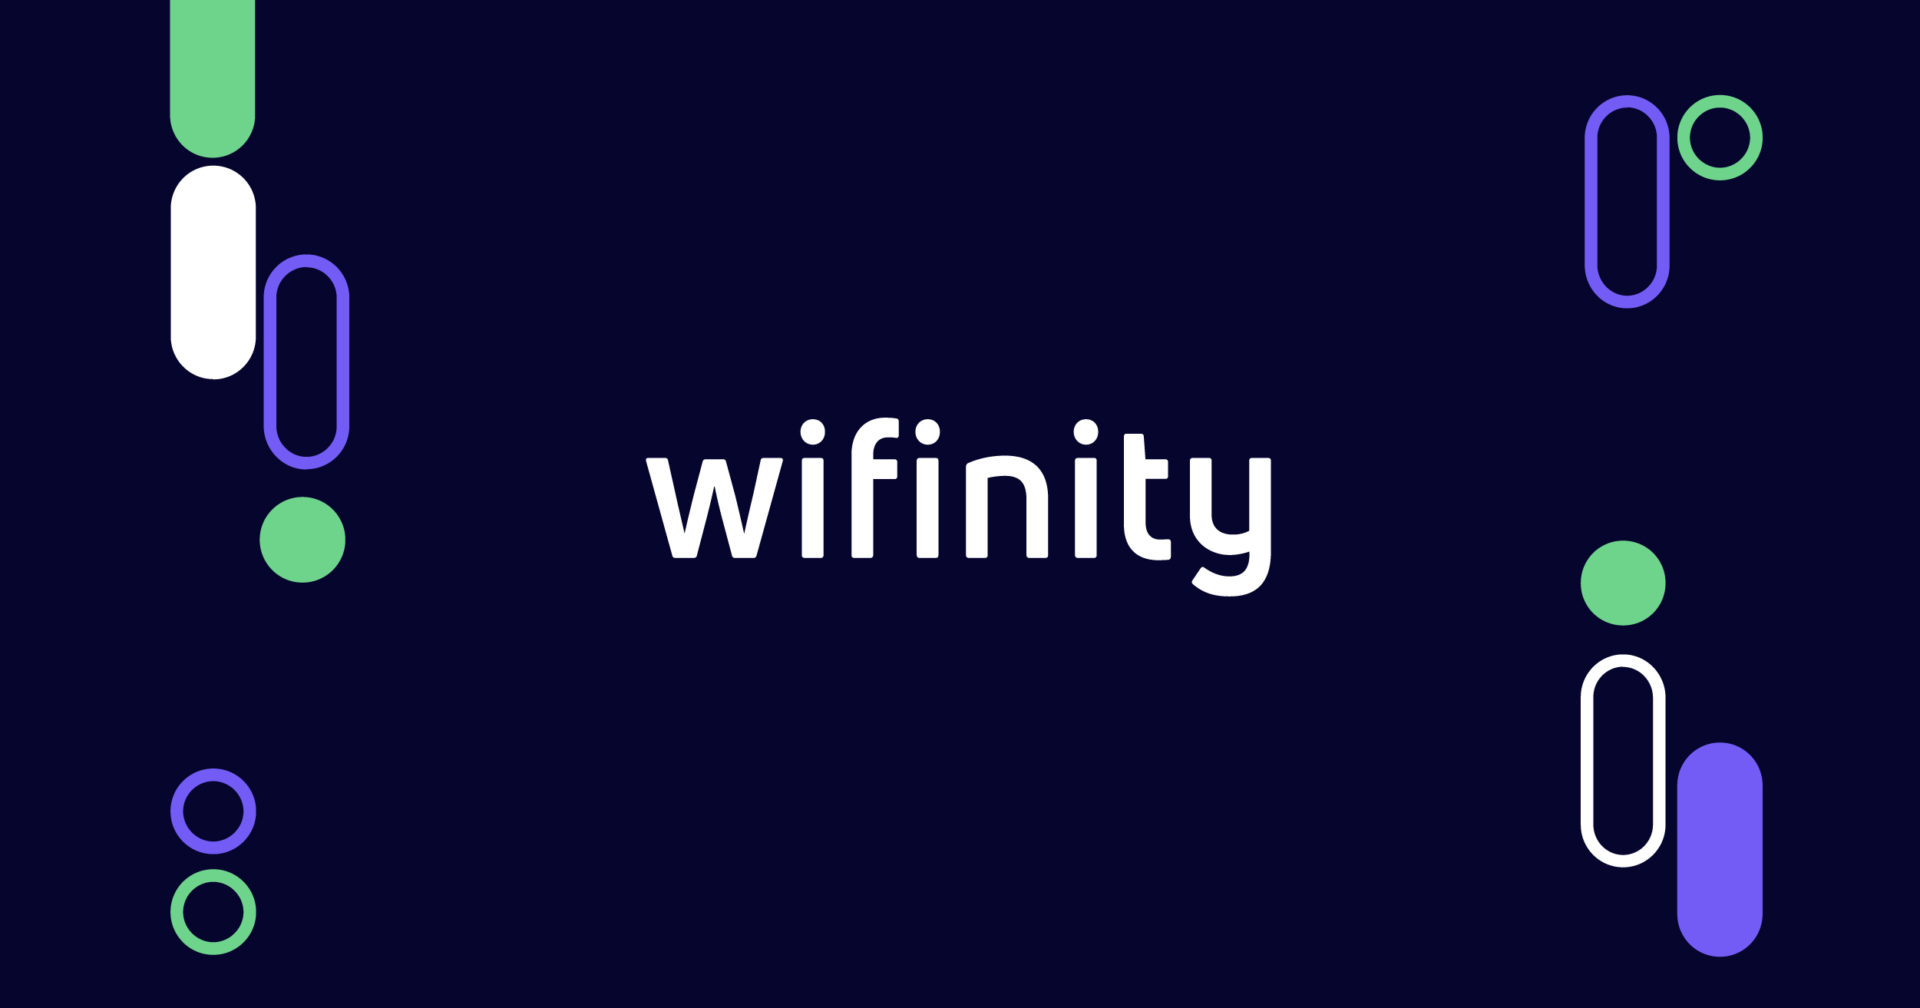 wifinity rebrand